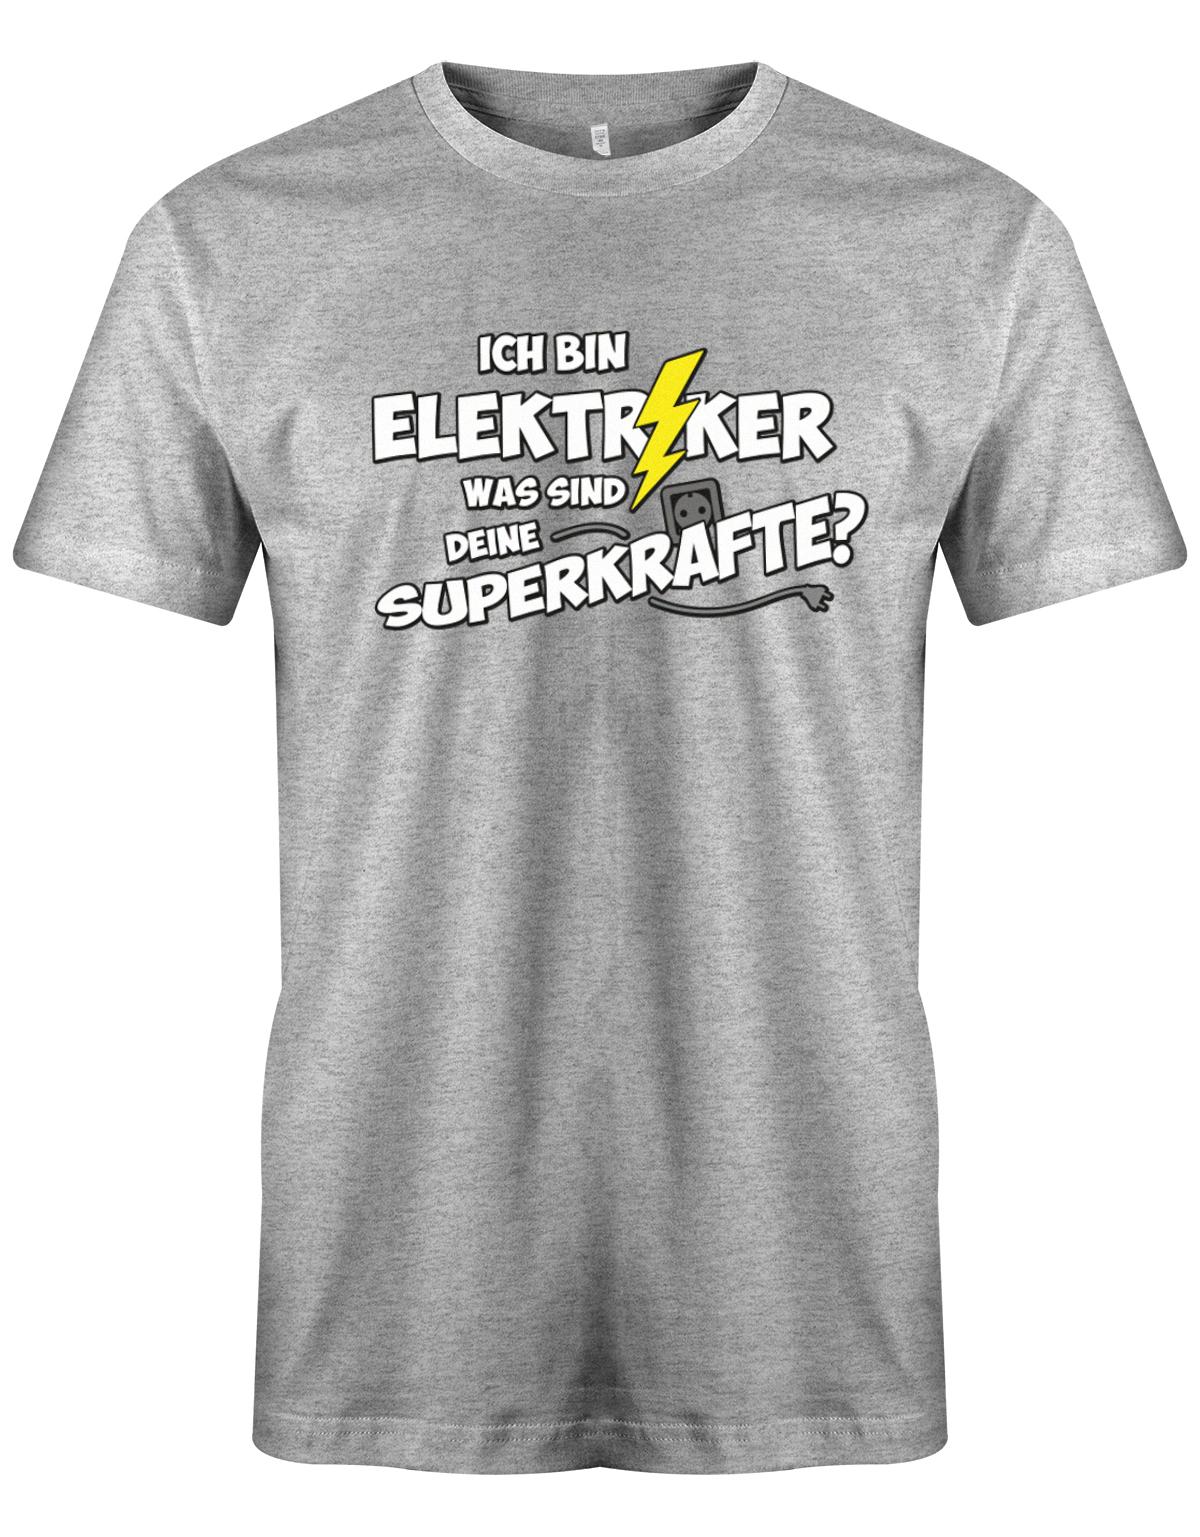 Elektriker Shirt - Ich bin Elektriker, was sind deine Superkräfte? Grau